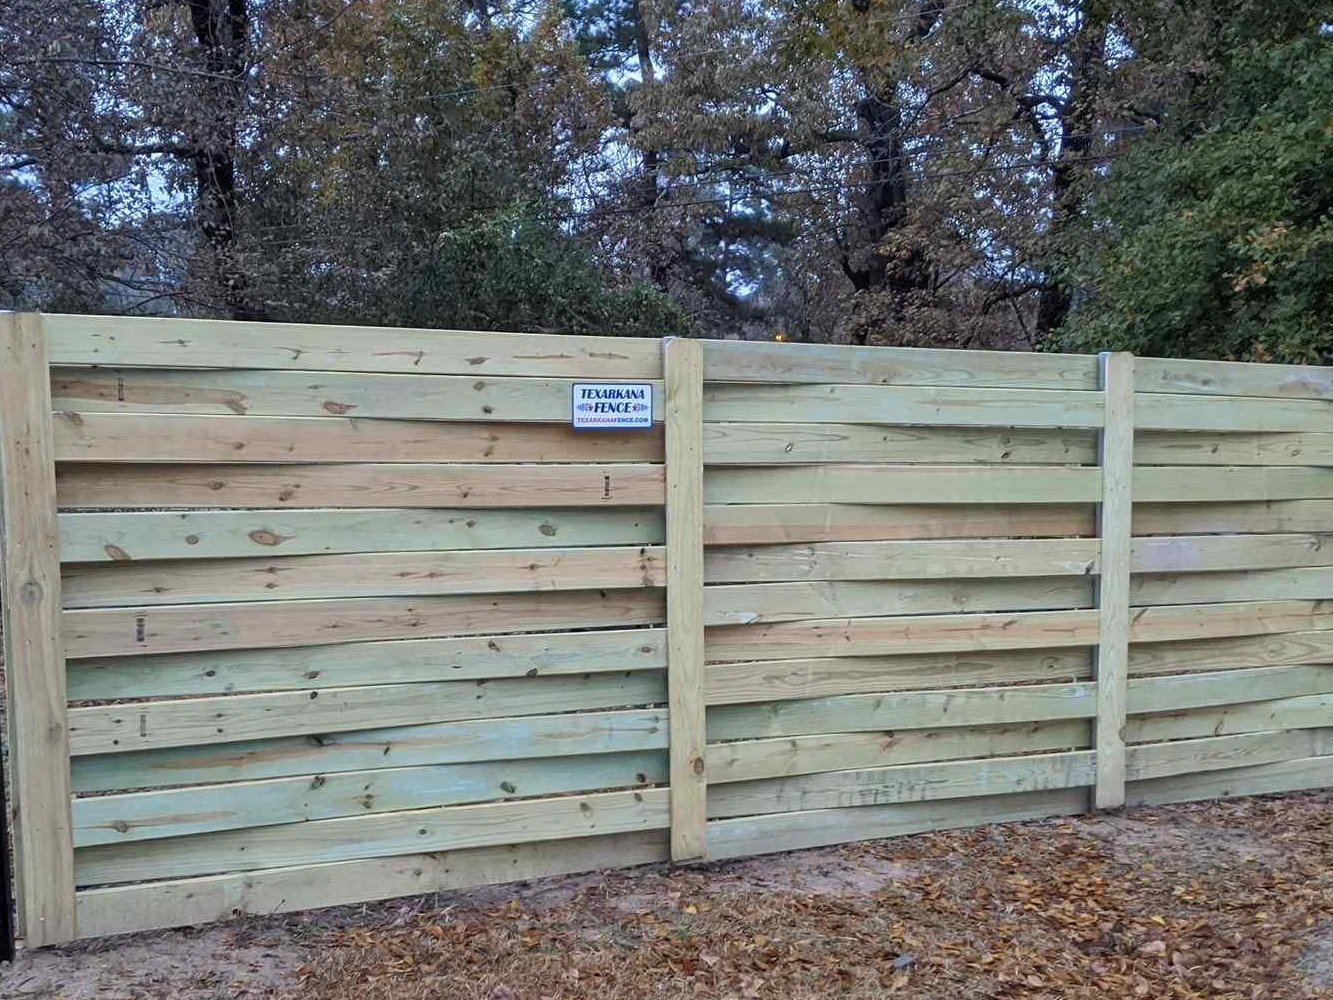 Nashville AR horizontal style wood fence